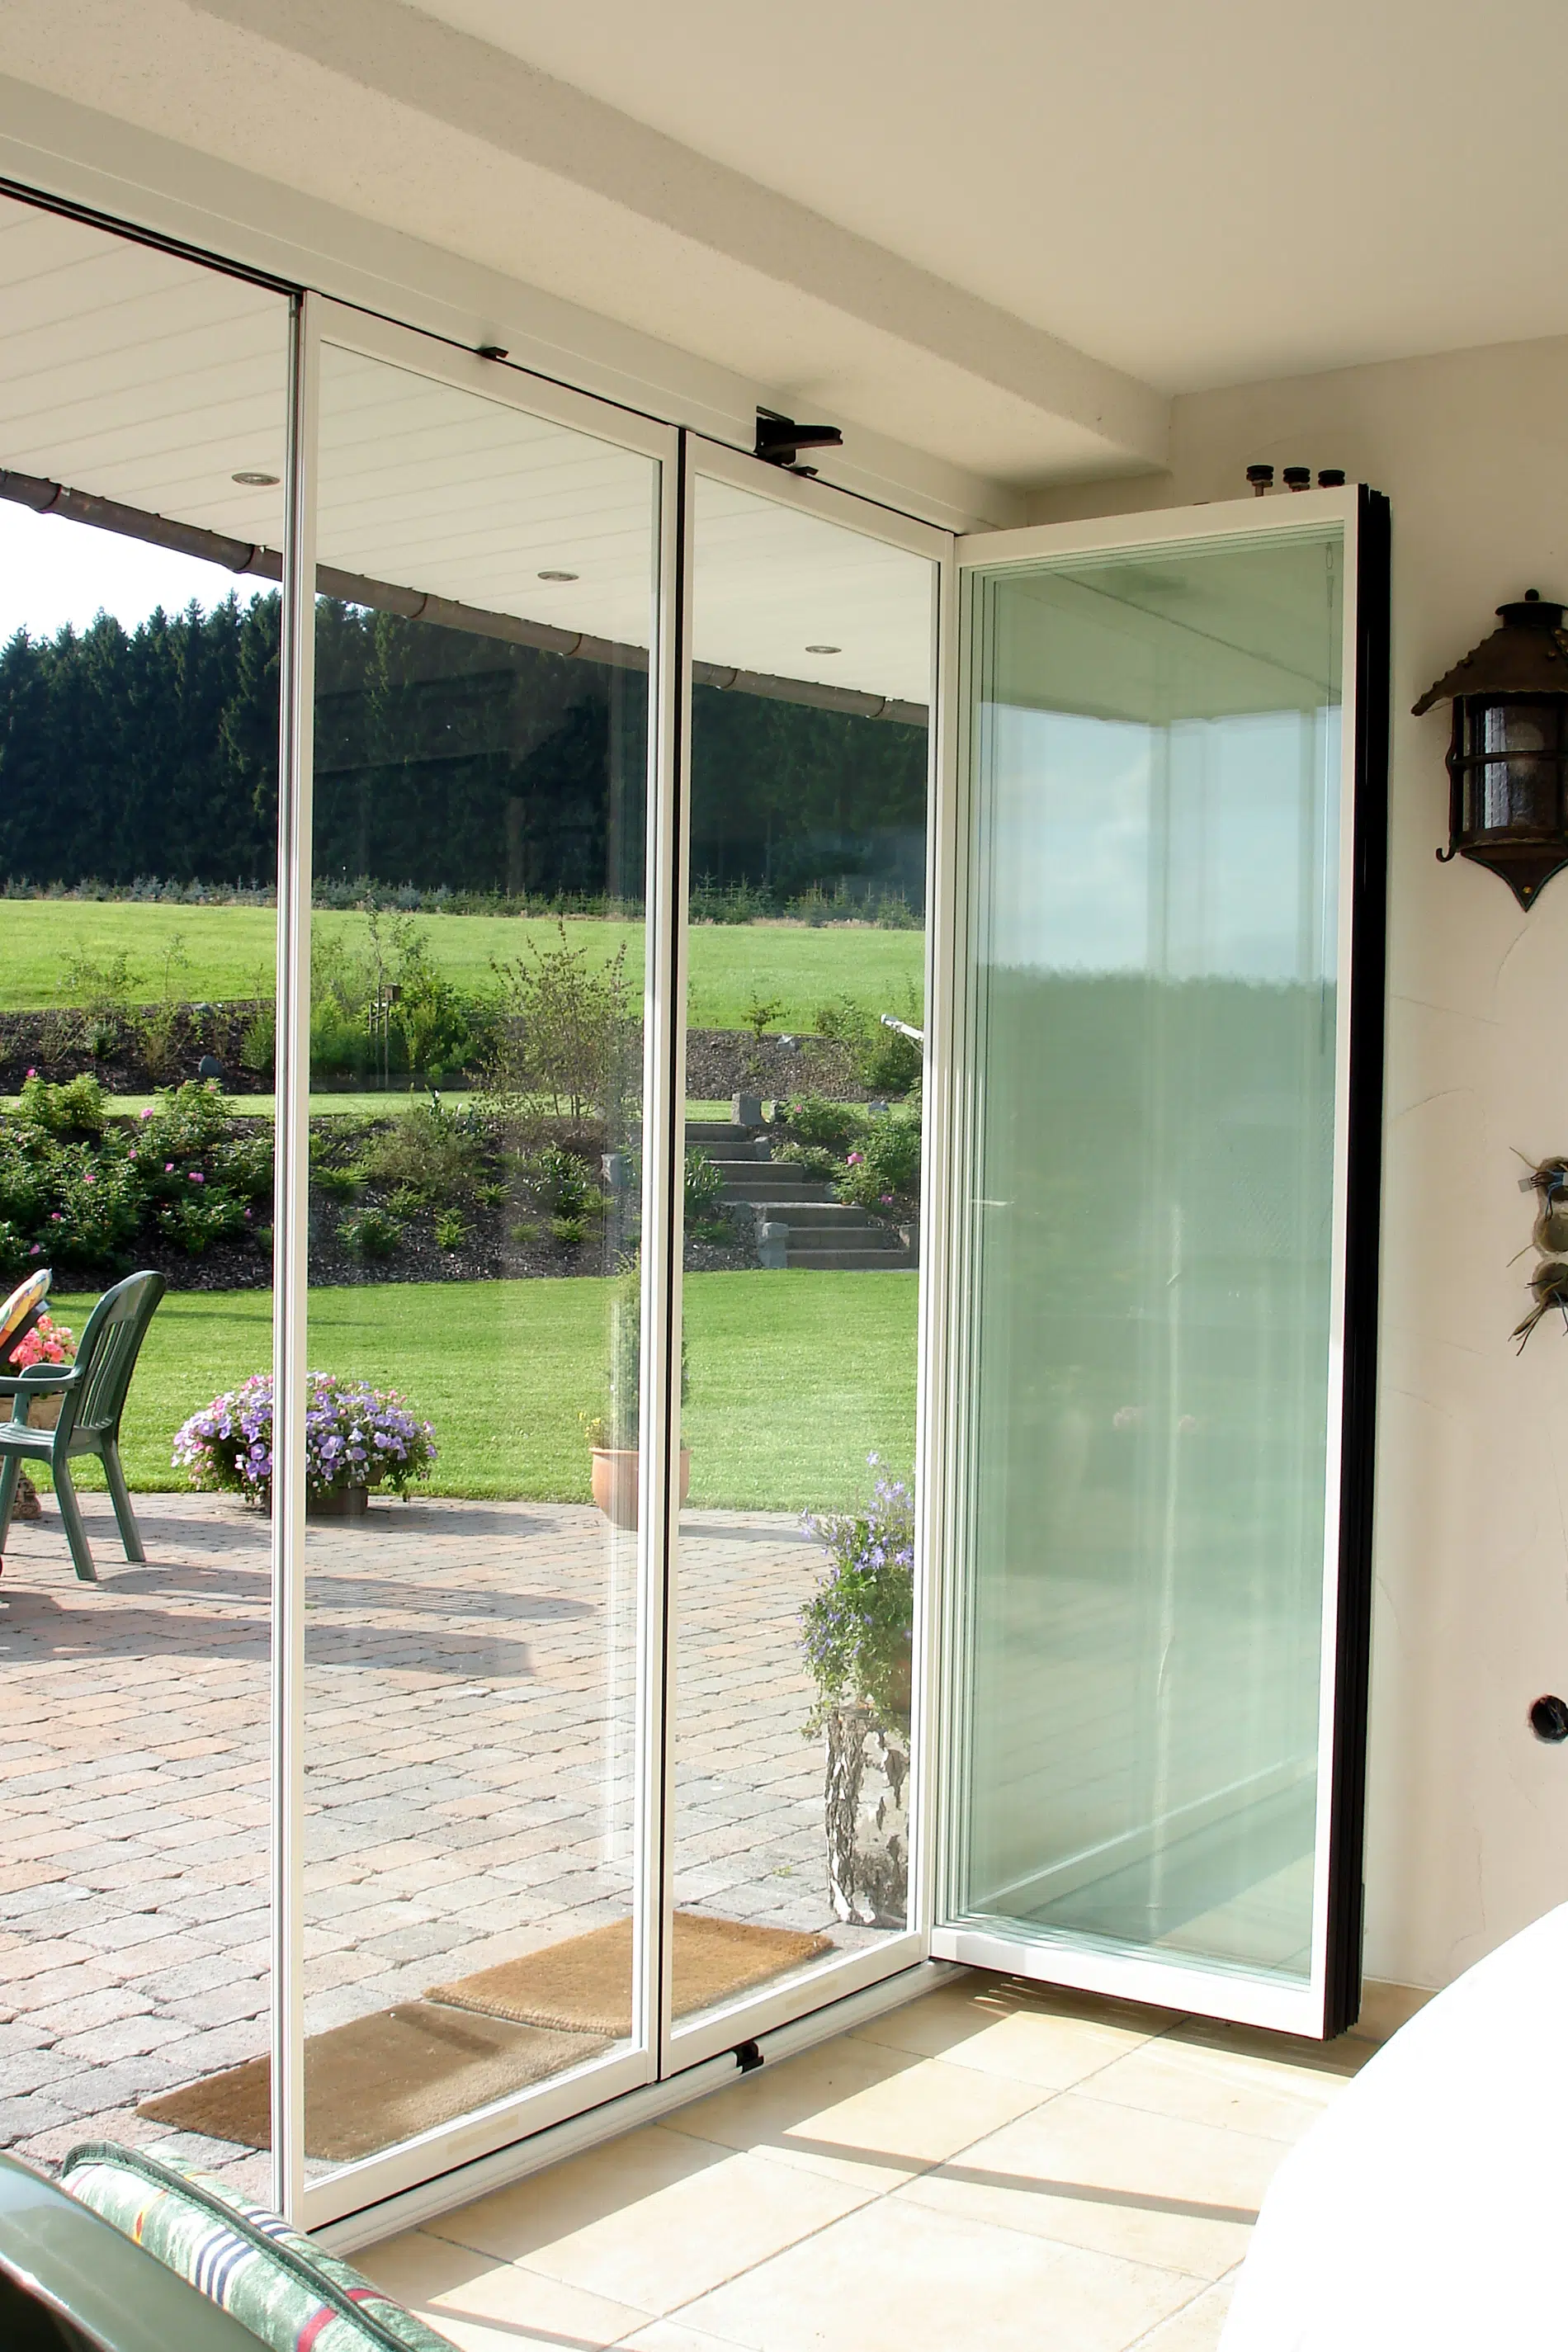 Wind- Staub- und Lärmschutz für Terrasse mit einer Verglasung